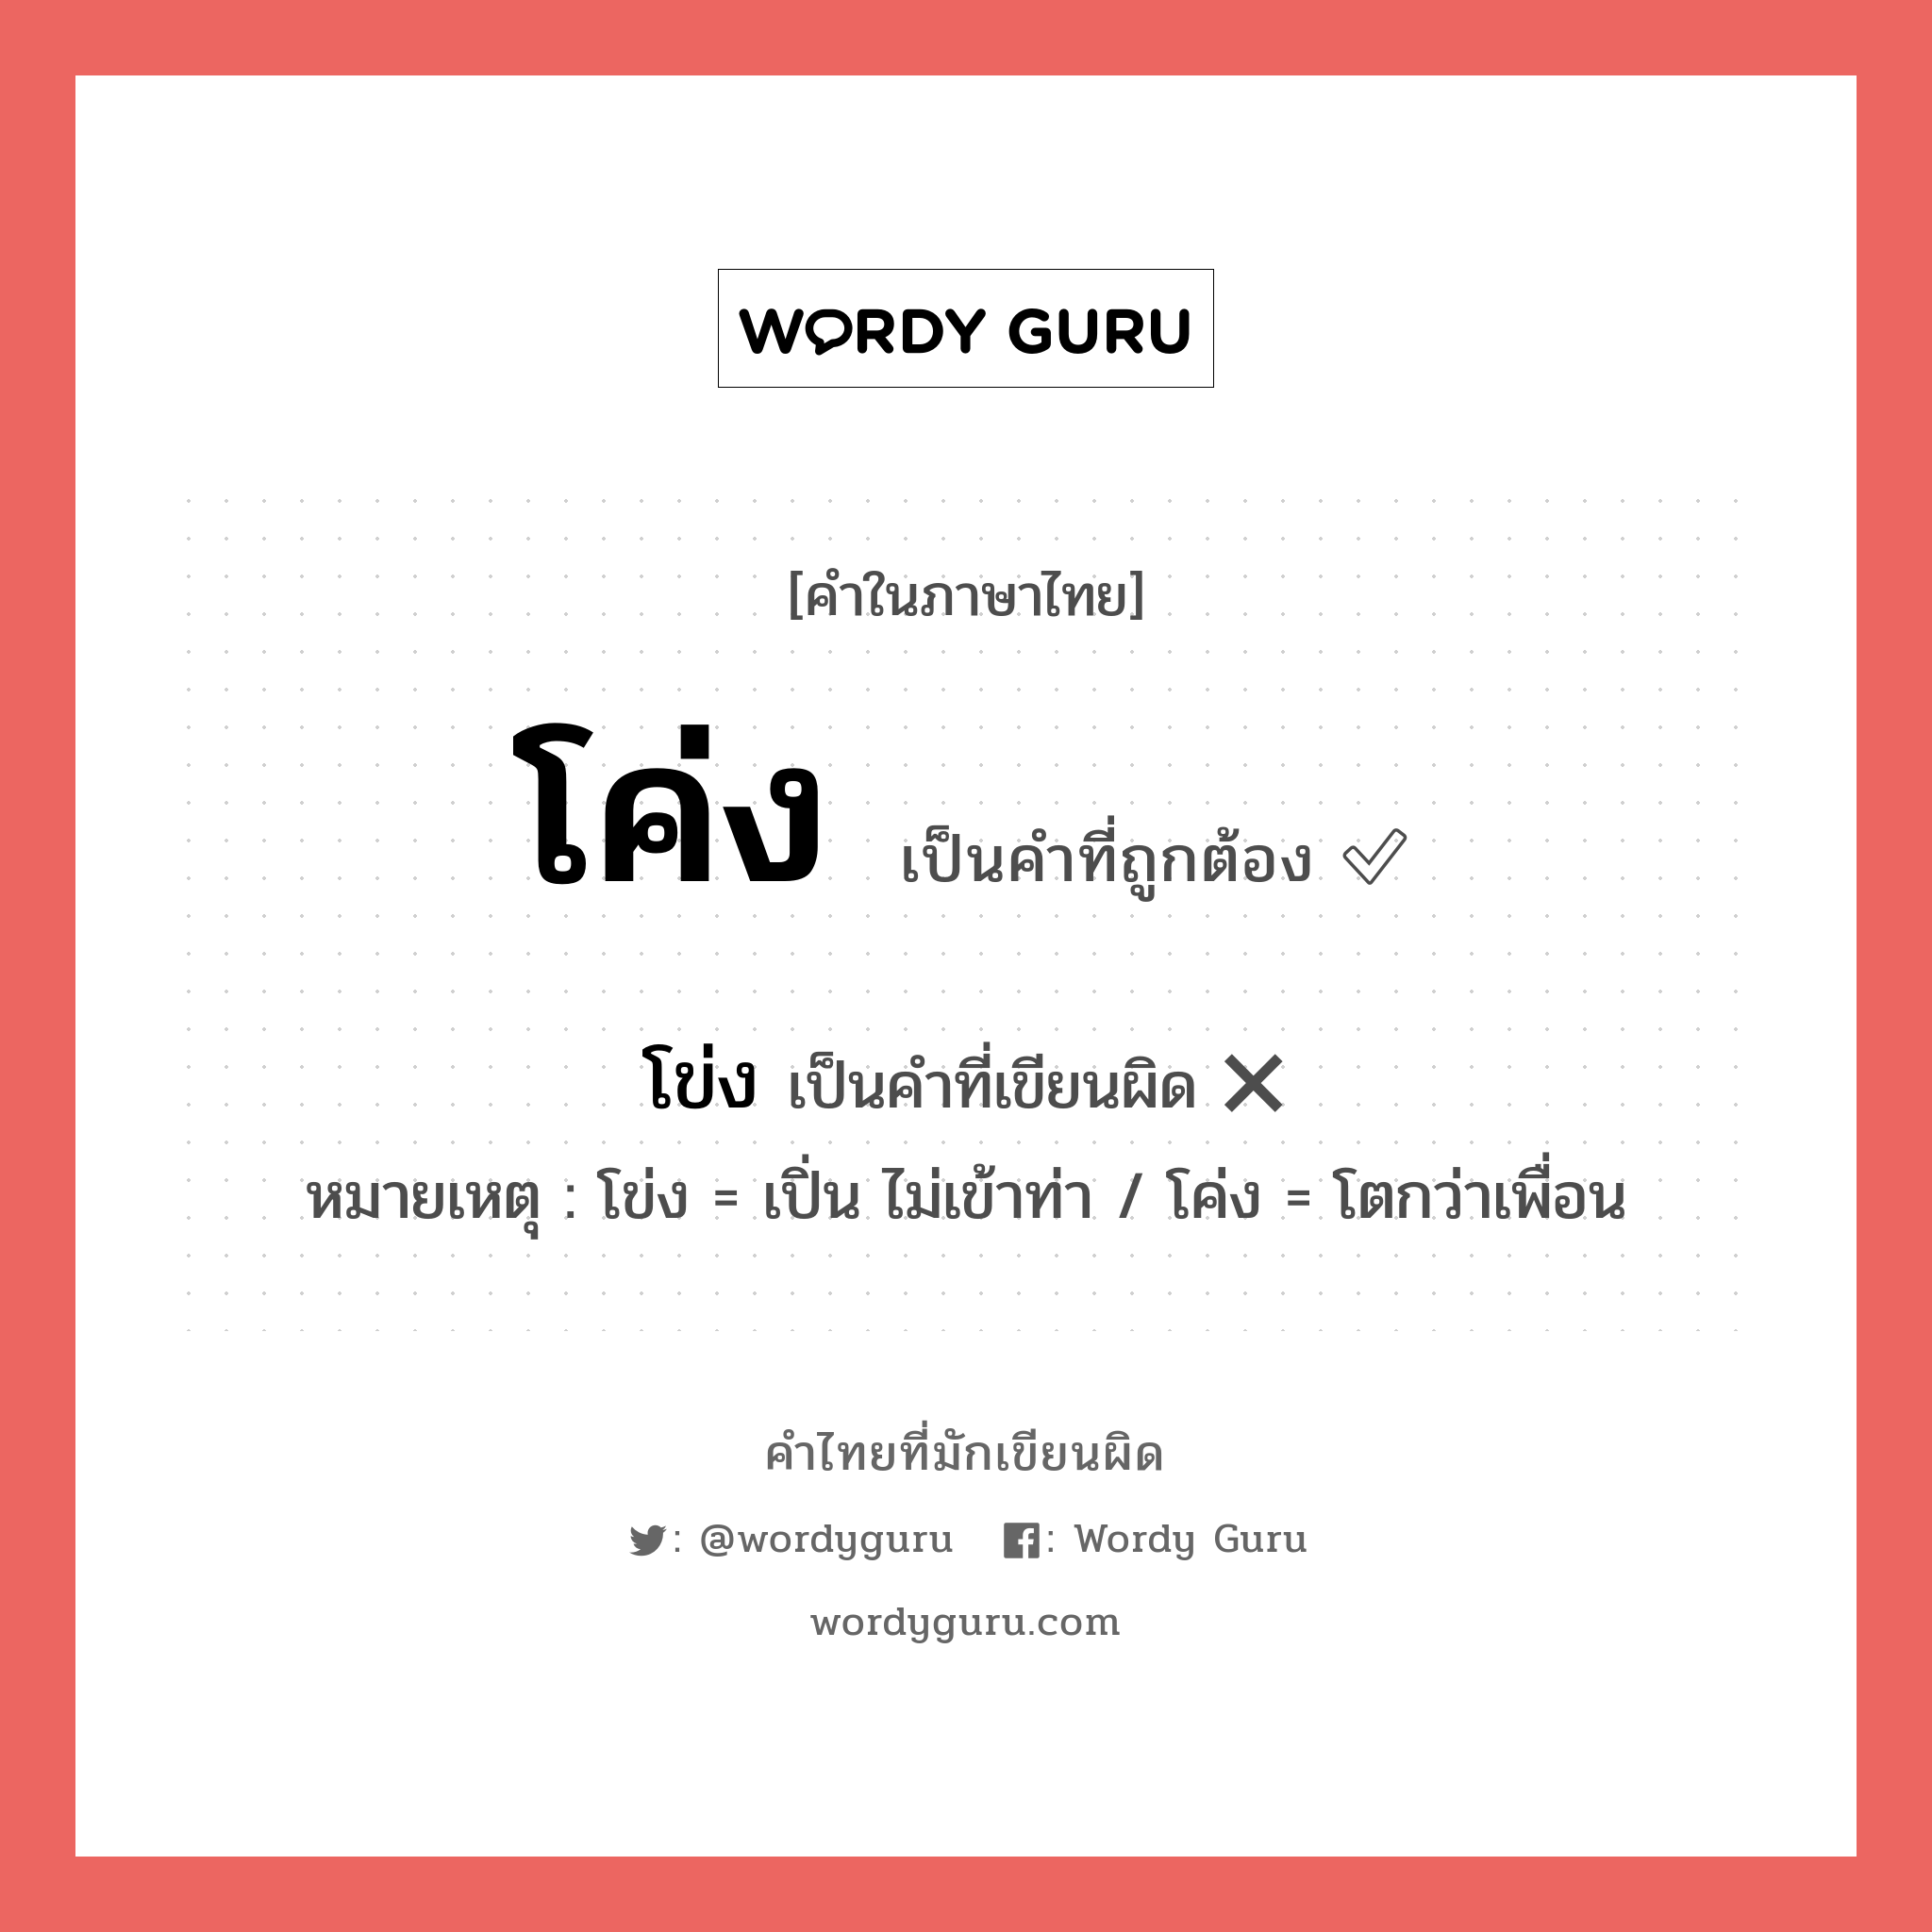 โค่ง หรือ โข่ง เขียนยังไง? คำไหนเขียนถูก?, คำในภาษาไทยที่มักเขียนผิด โค่ง คำที่ผิด ❌ โข่ง หมายเหตุ โข่ง = เปิ่น ไม่เข้าท่า / โค่ง = โตกว่าเพื่อน